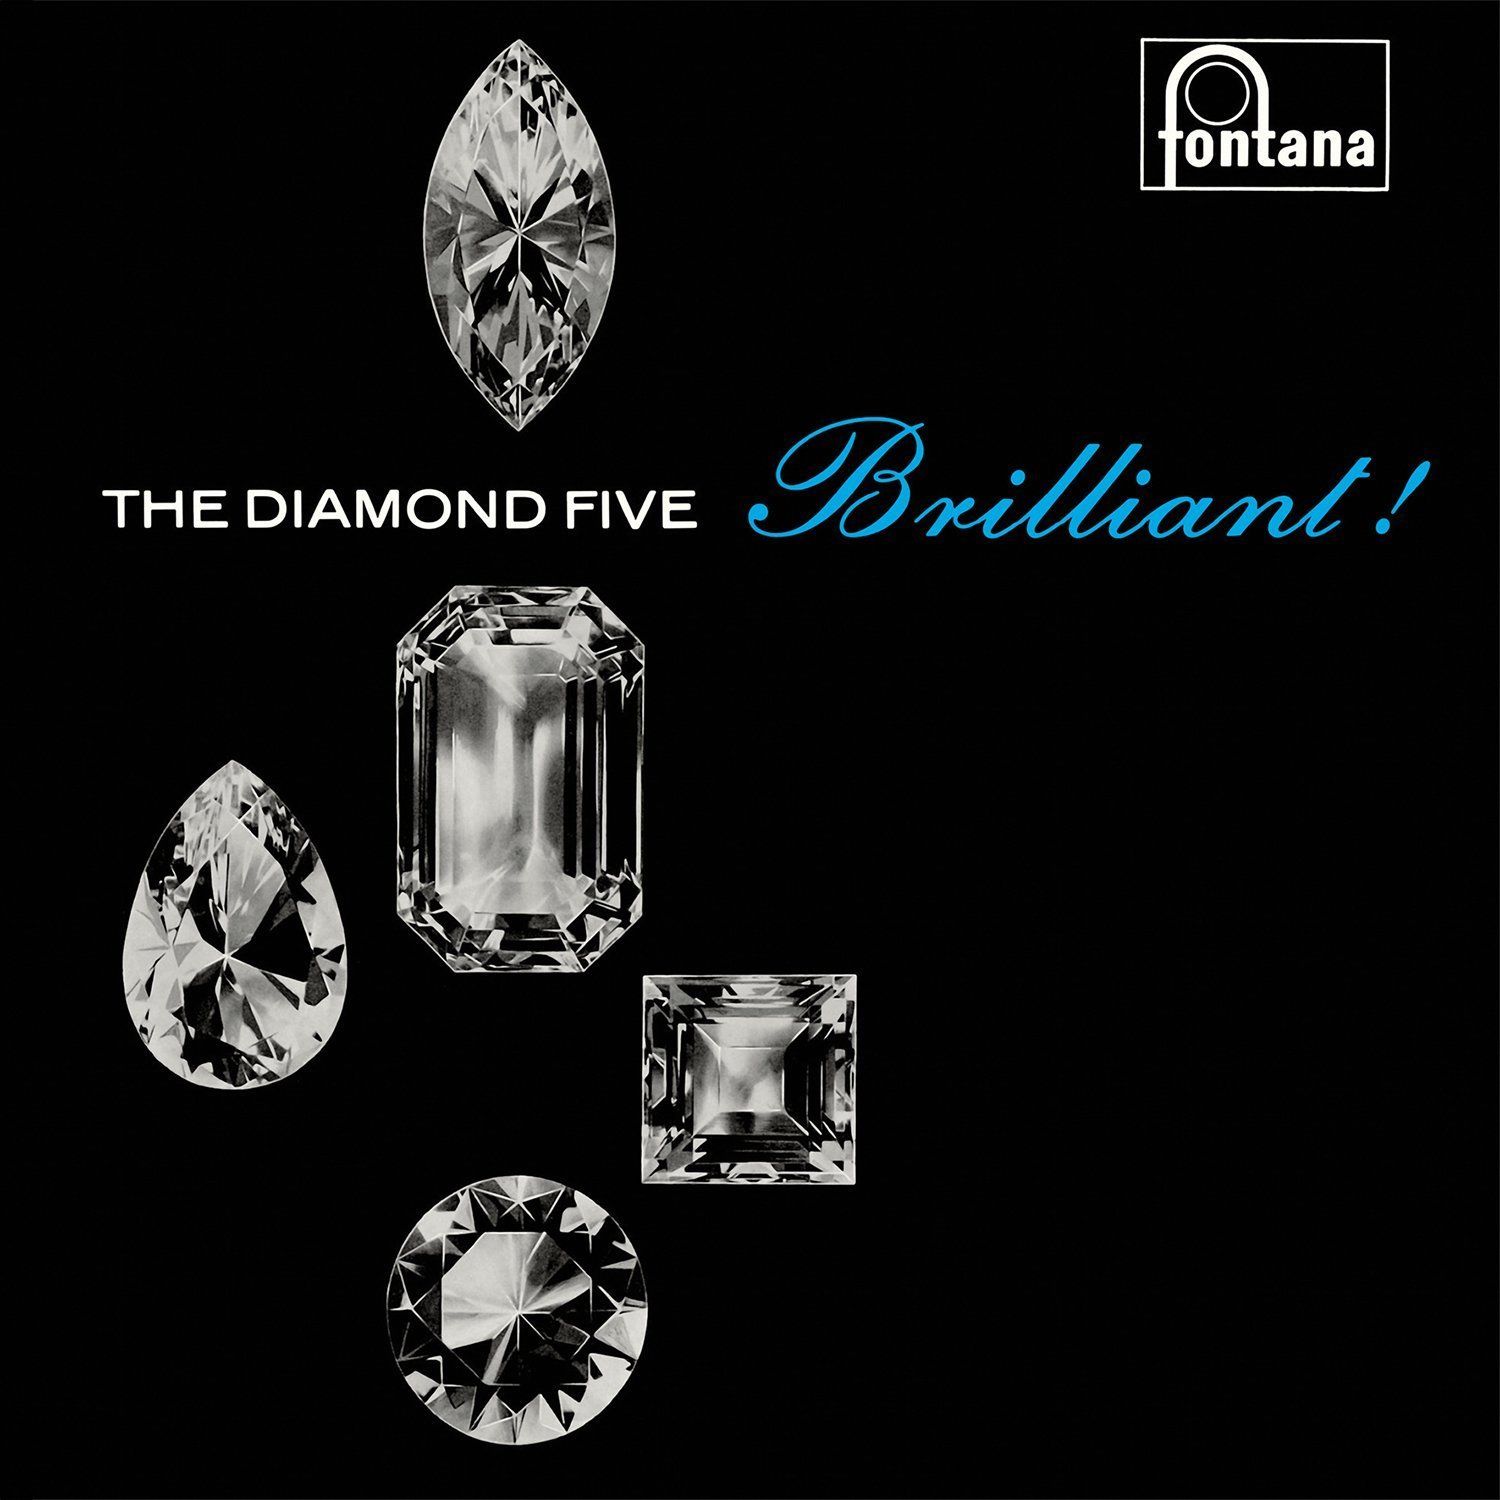 The Diamond Five - Brilliant